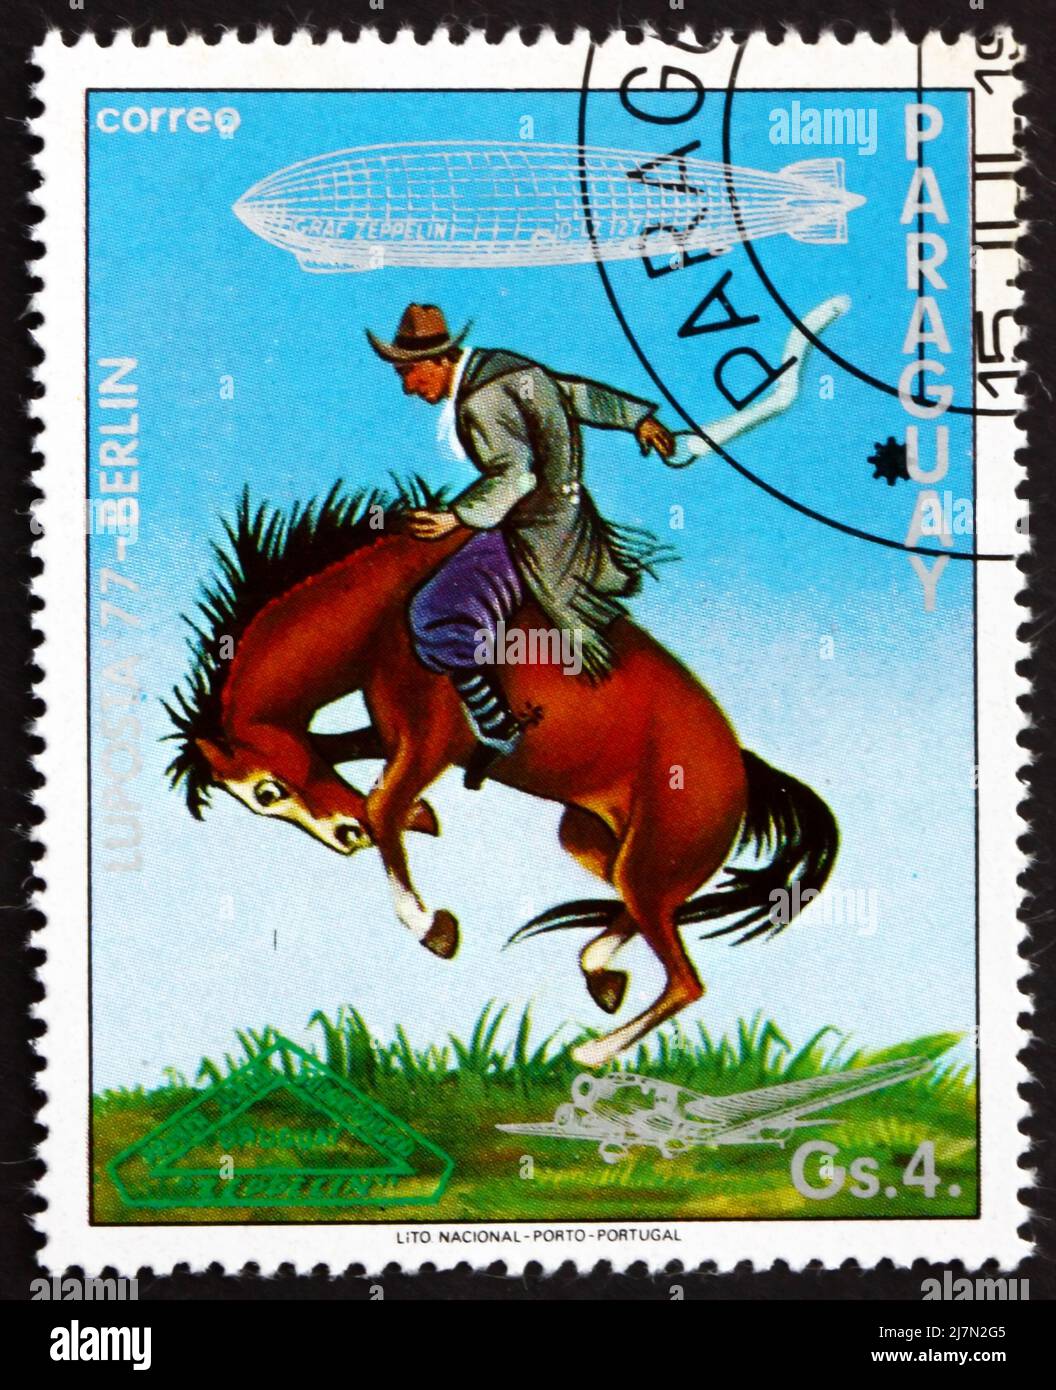 PARAGUAY - VERS 1977: Un timbre imprimé au Paraguay montre Gaucho Breaking Bronco, Uruguay, Graf Zeppelin 1st South America Flight, vers 1977 Banque D'Images